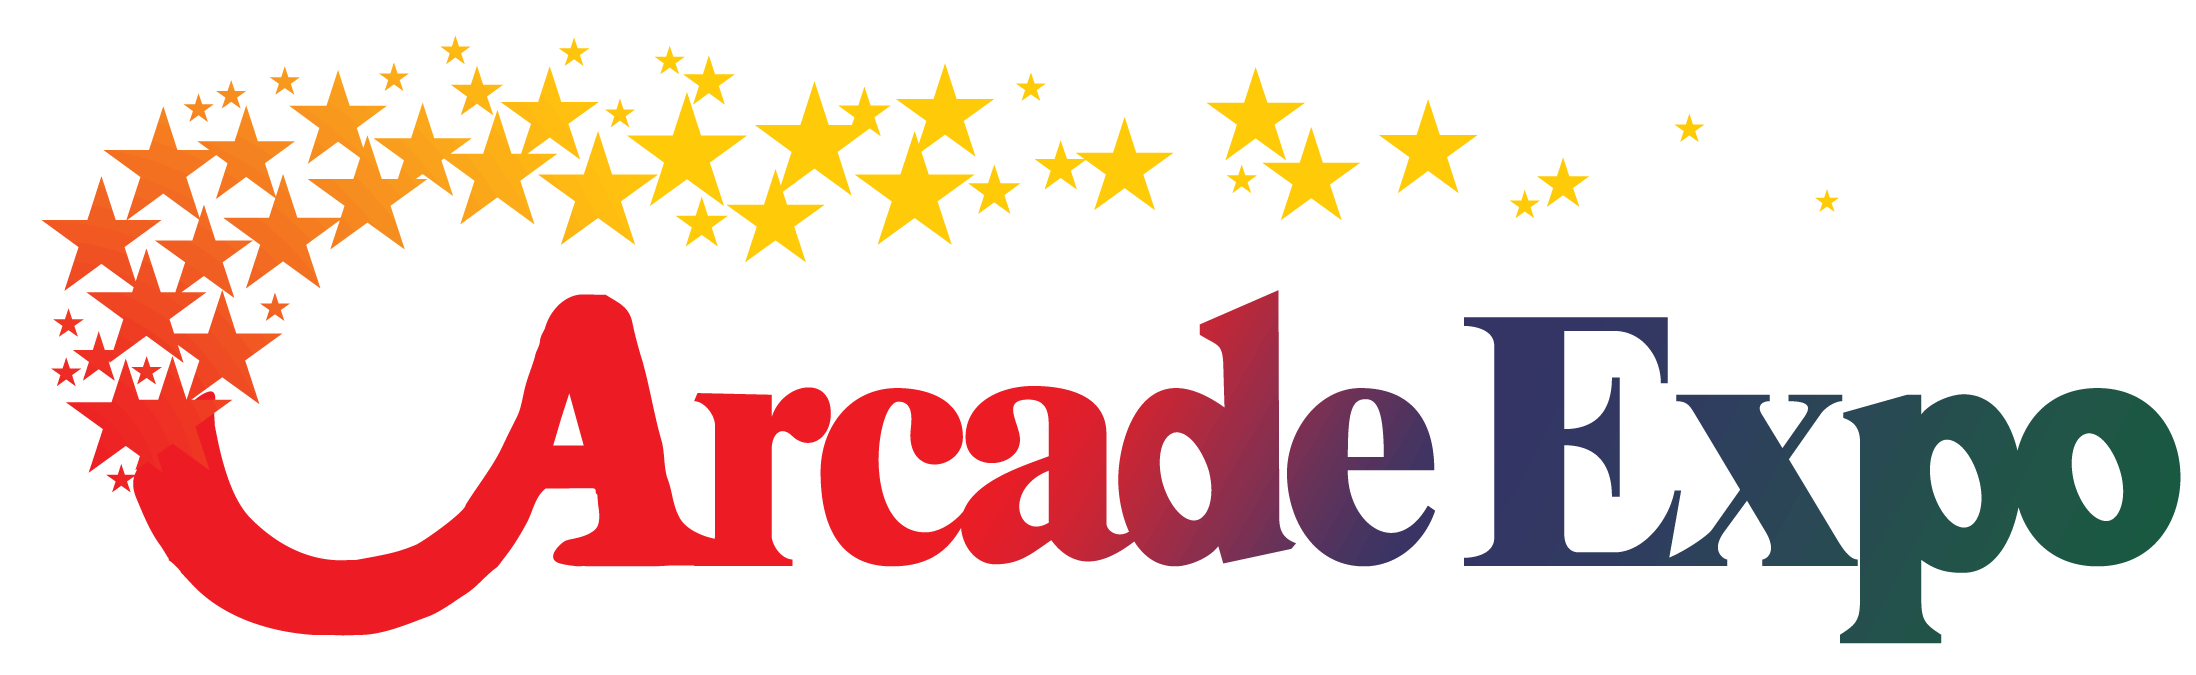 Houston Arcade Expo